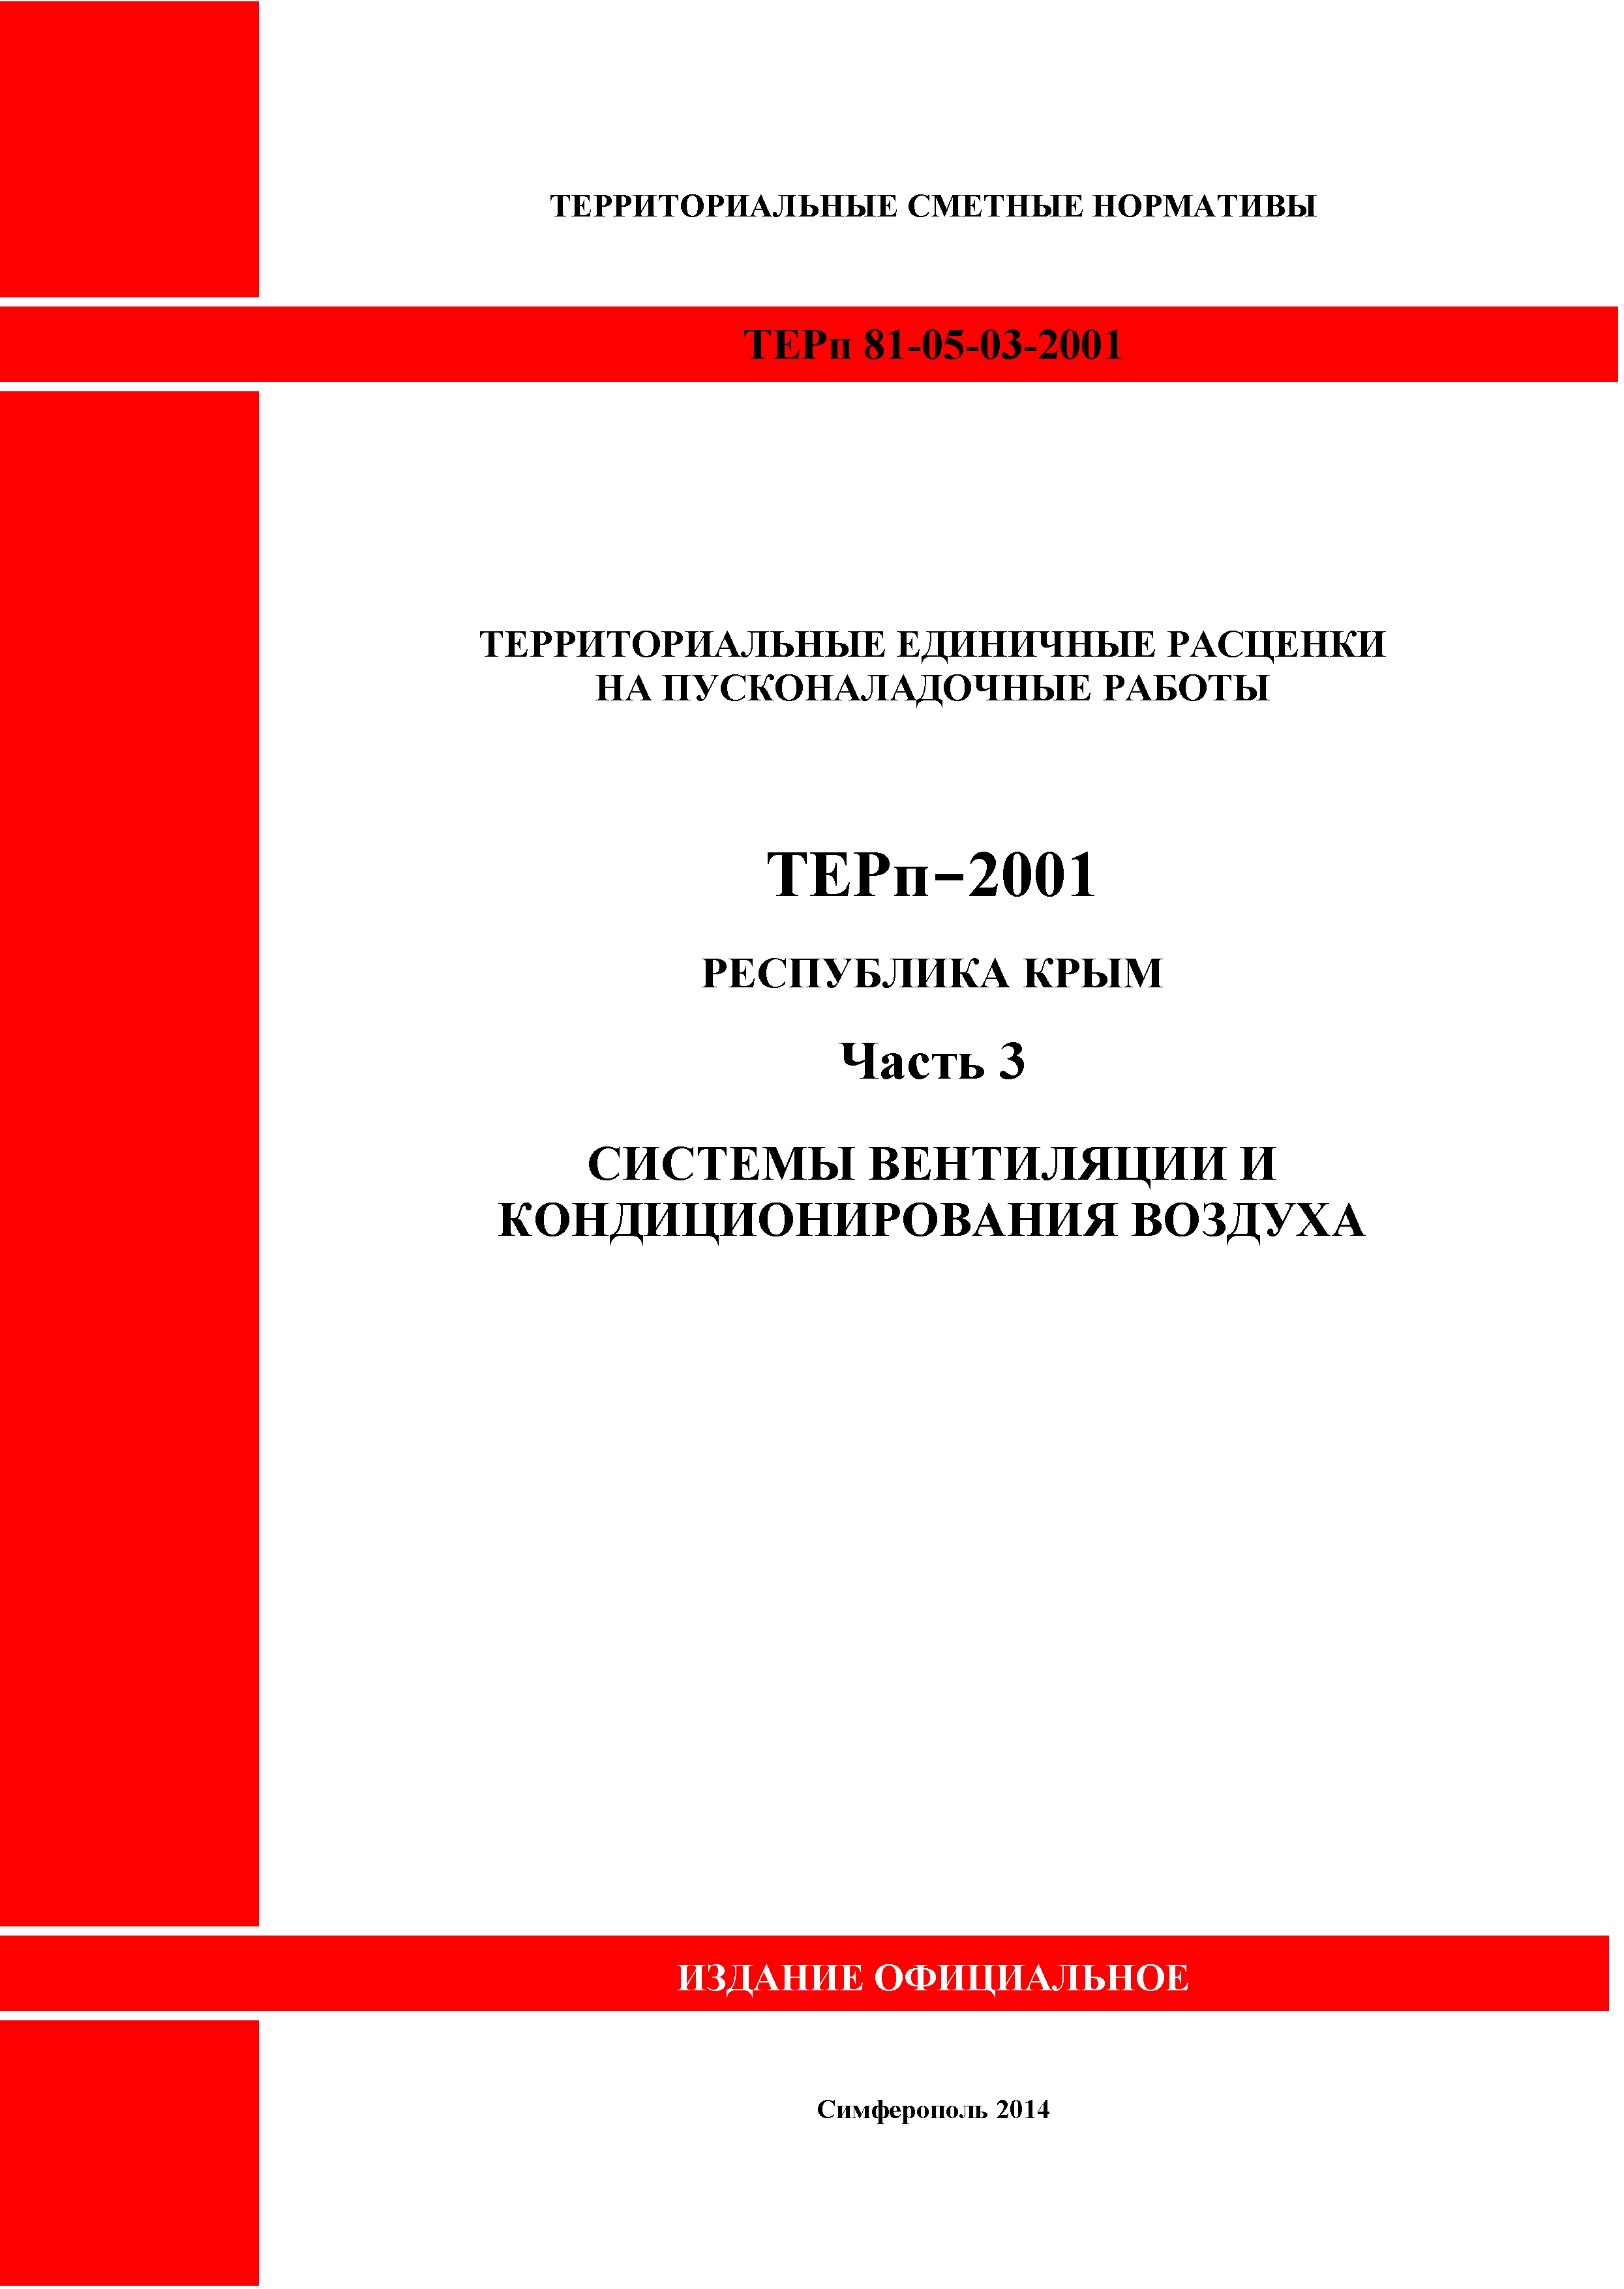 ТЕРп 2001 Республика Крым